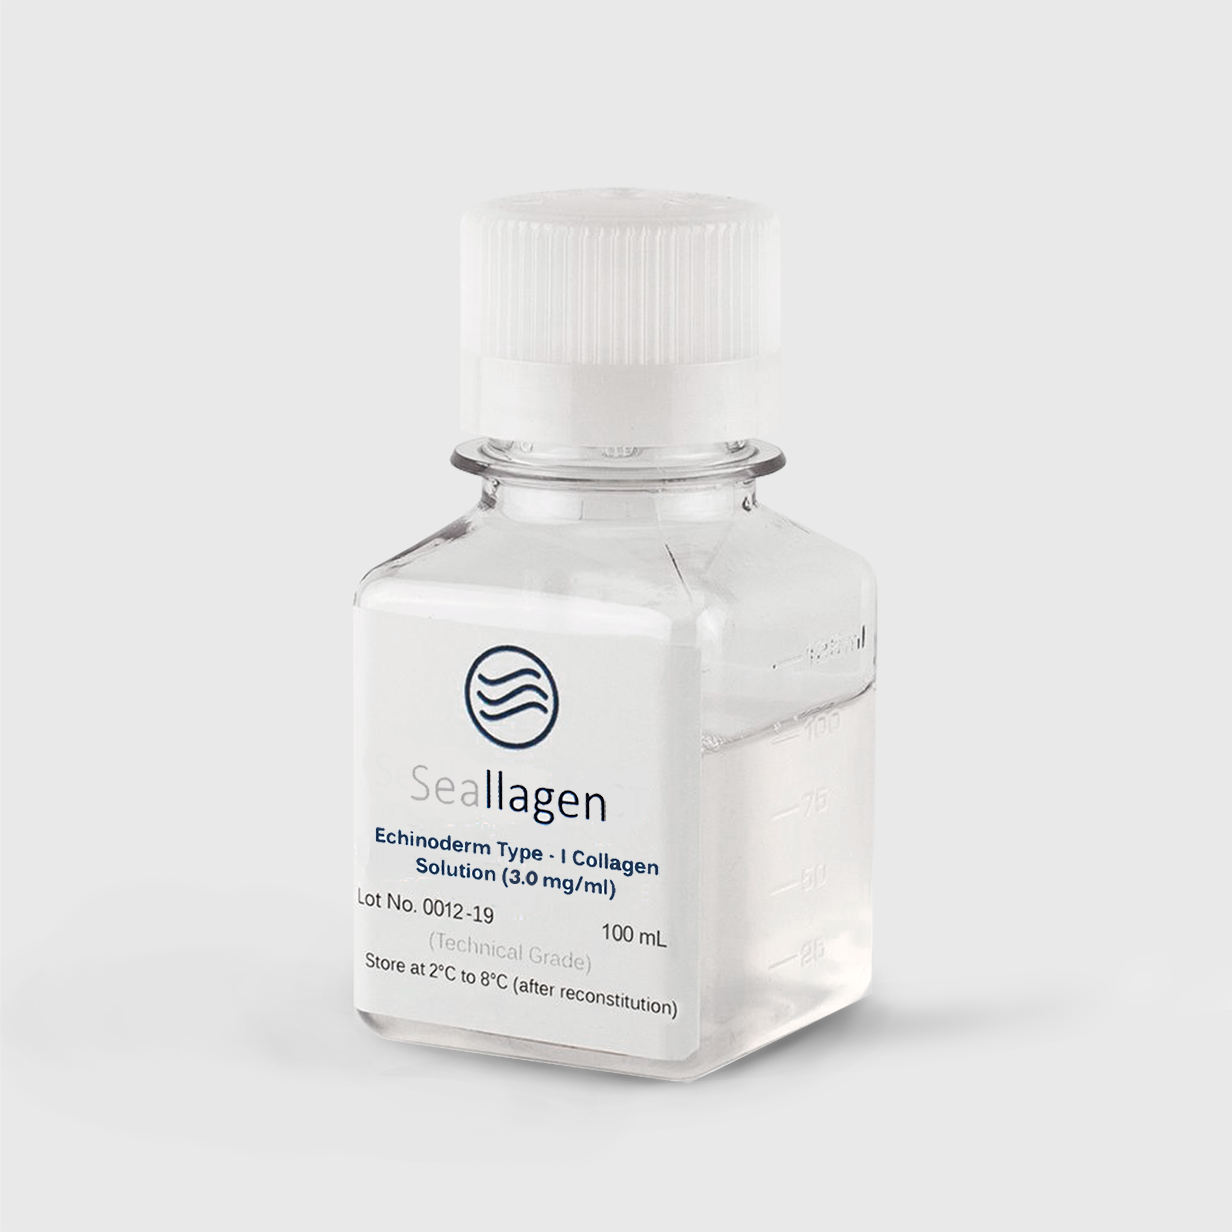 Seallagen Type-I Collagen - Solution